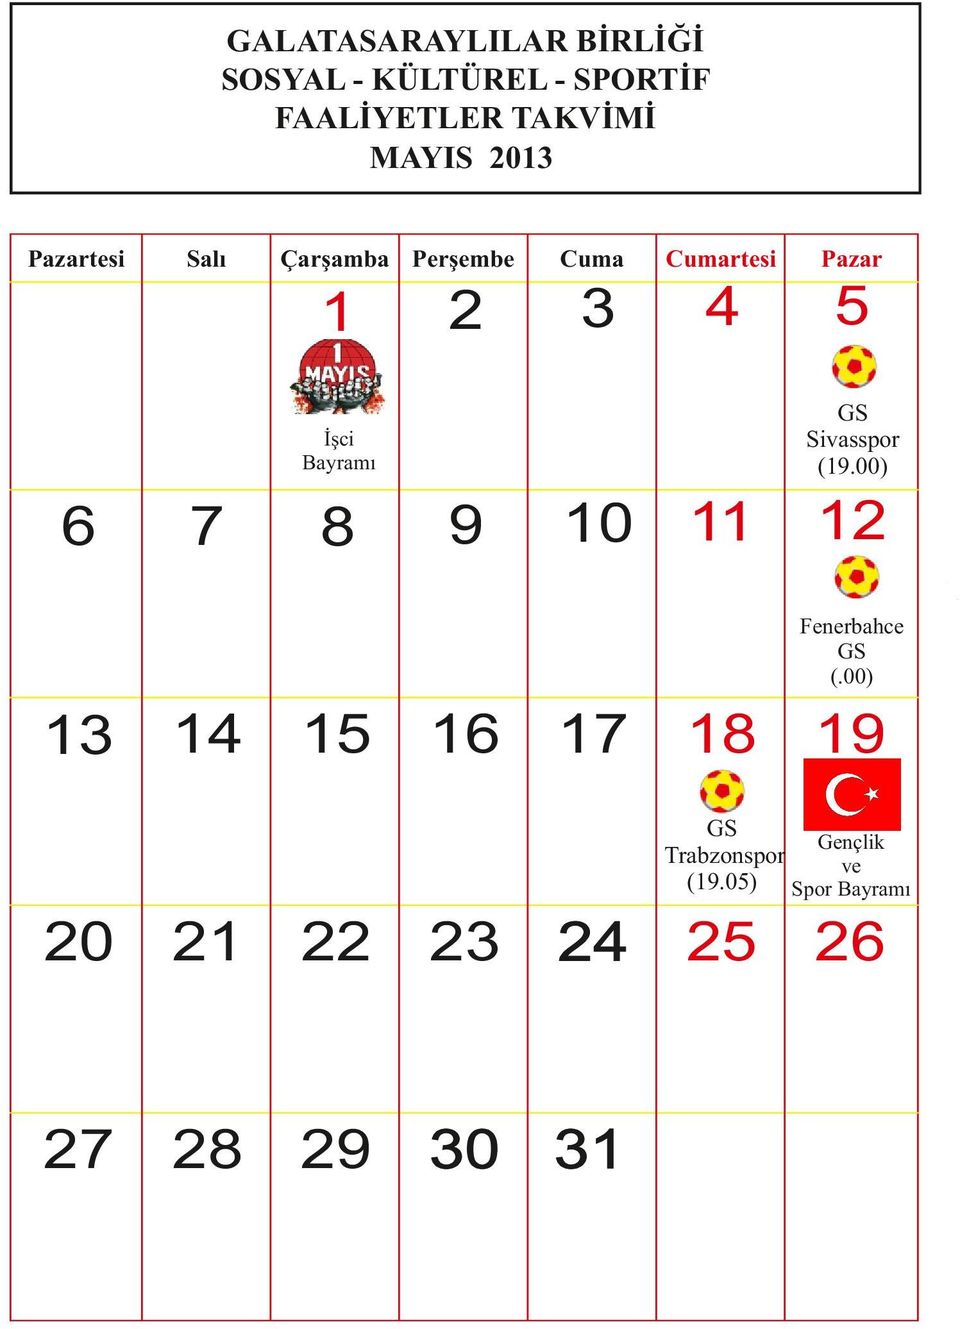 Sivasspor (19.00) İşci Bayramı 6 7 8 9 10 11 12 Fenerbahce (.